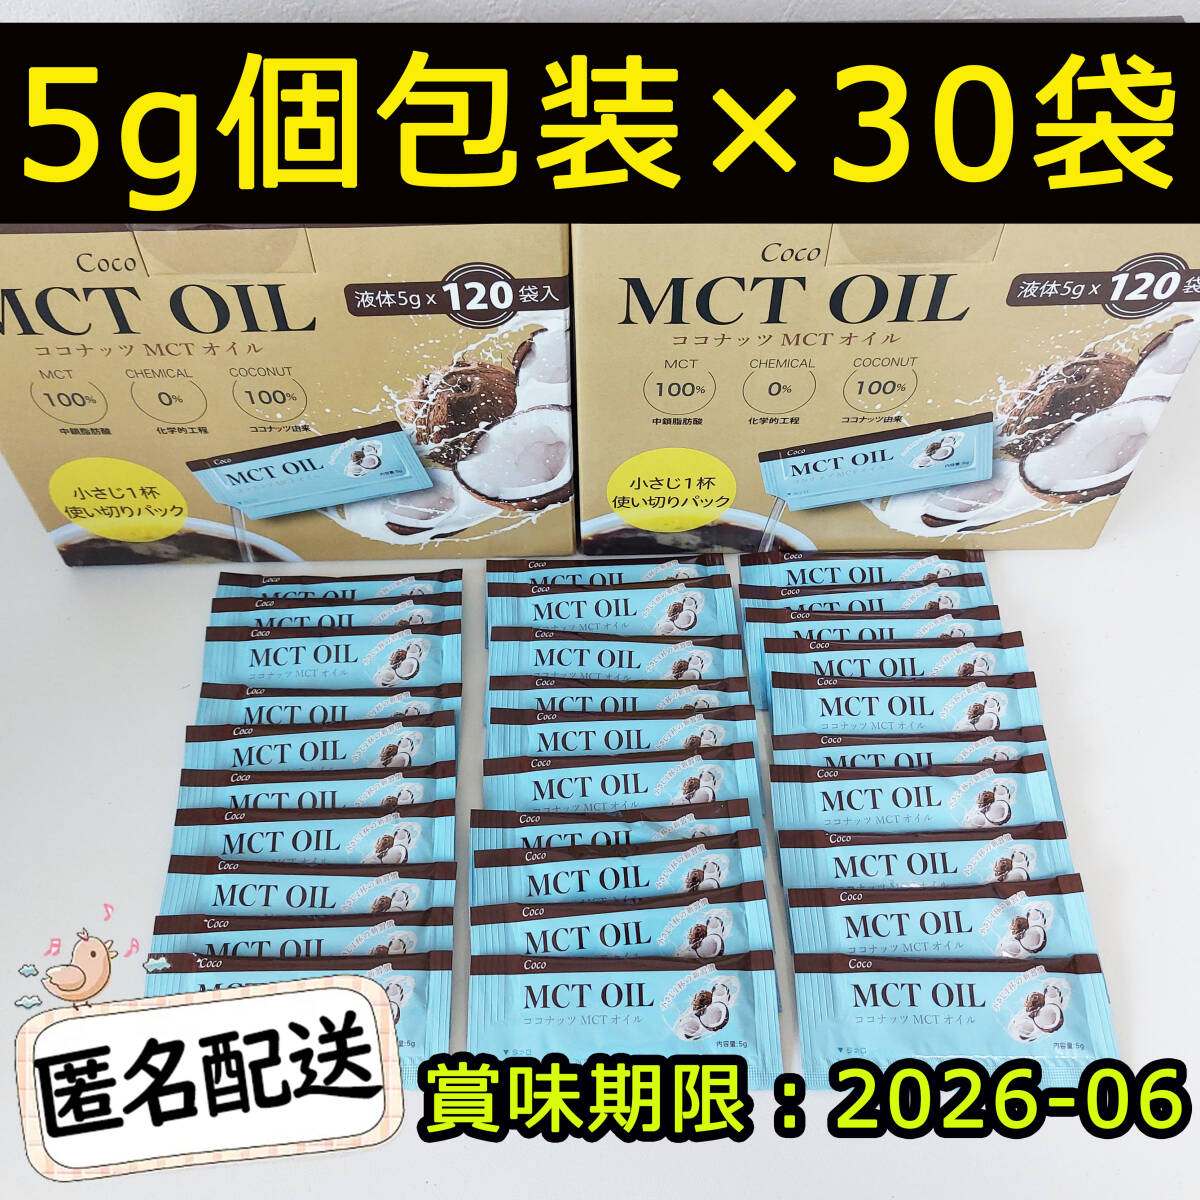 Новое кокосовое масло MCT 5G x 30 мешков Coco McT Oil Costco